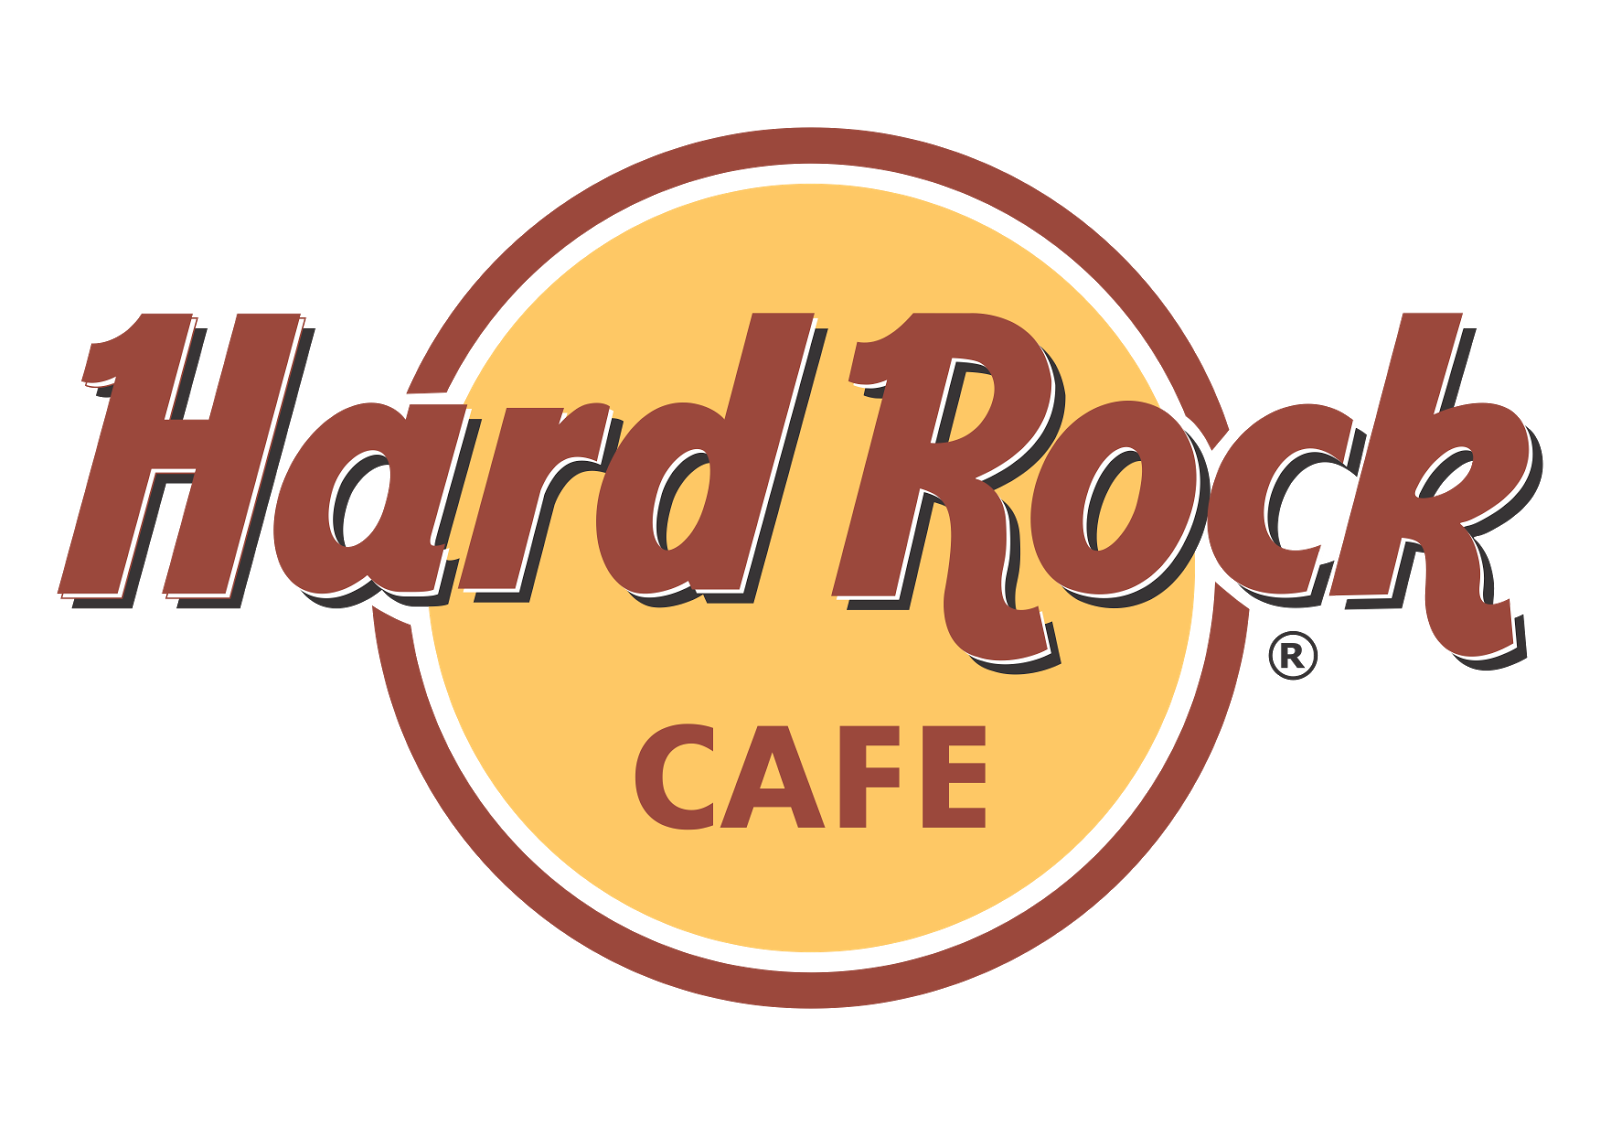 hard rock cafe logo